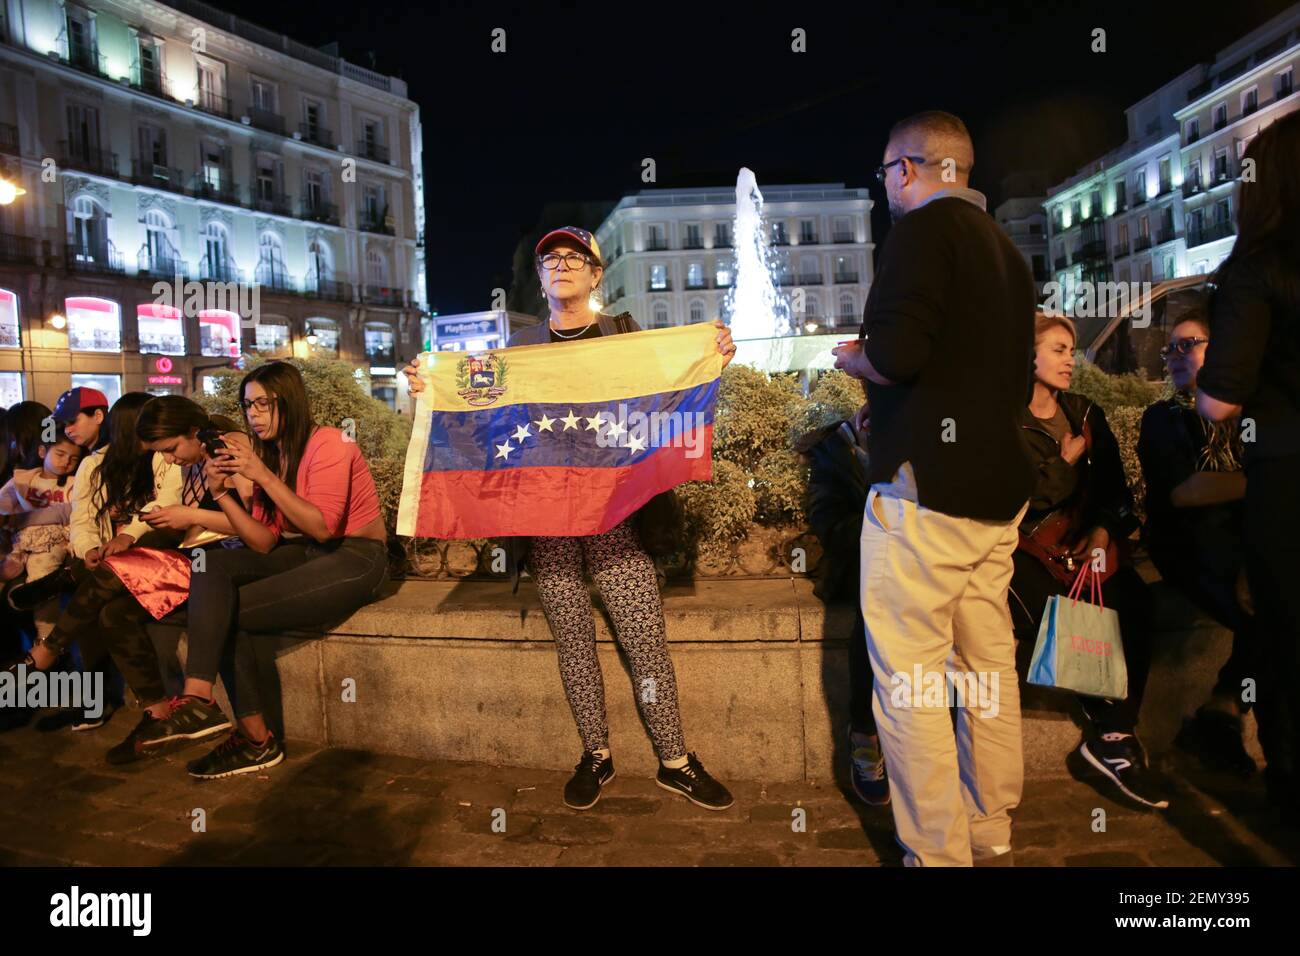 Una mujer vista con bandera venezolana durante la manifestación. Cientos de  personas se reunieron en la Puerta del Sol, Madrid, en una manifestación  llamada operación por la libertad de Venezuela contra la